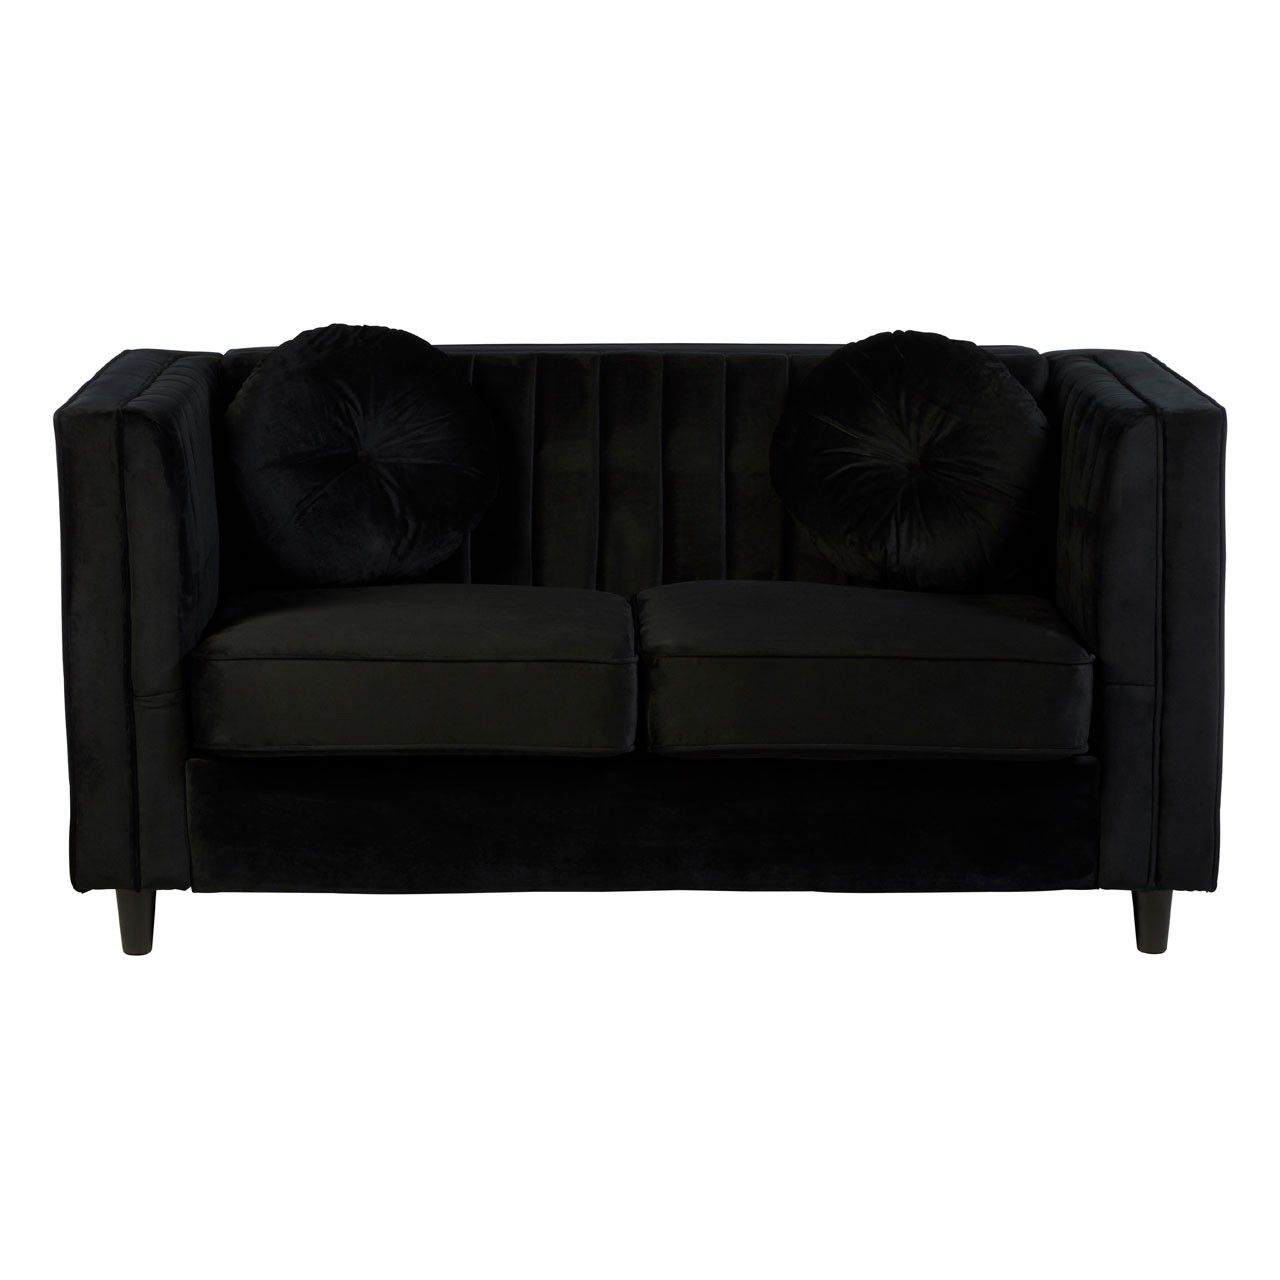 Farah 2 Seat Black Velvet Sofa For Black Velvet Sofas (Photo 10 of 15)